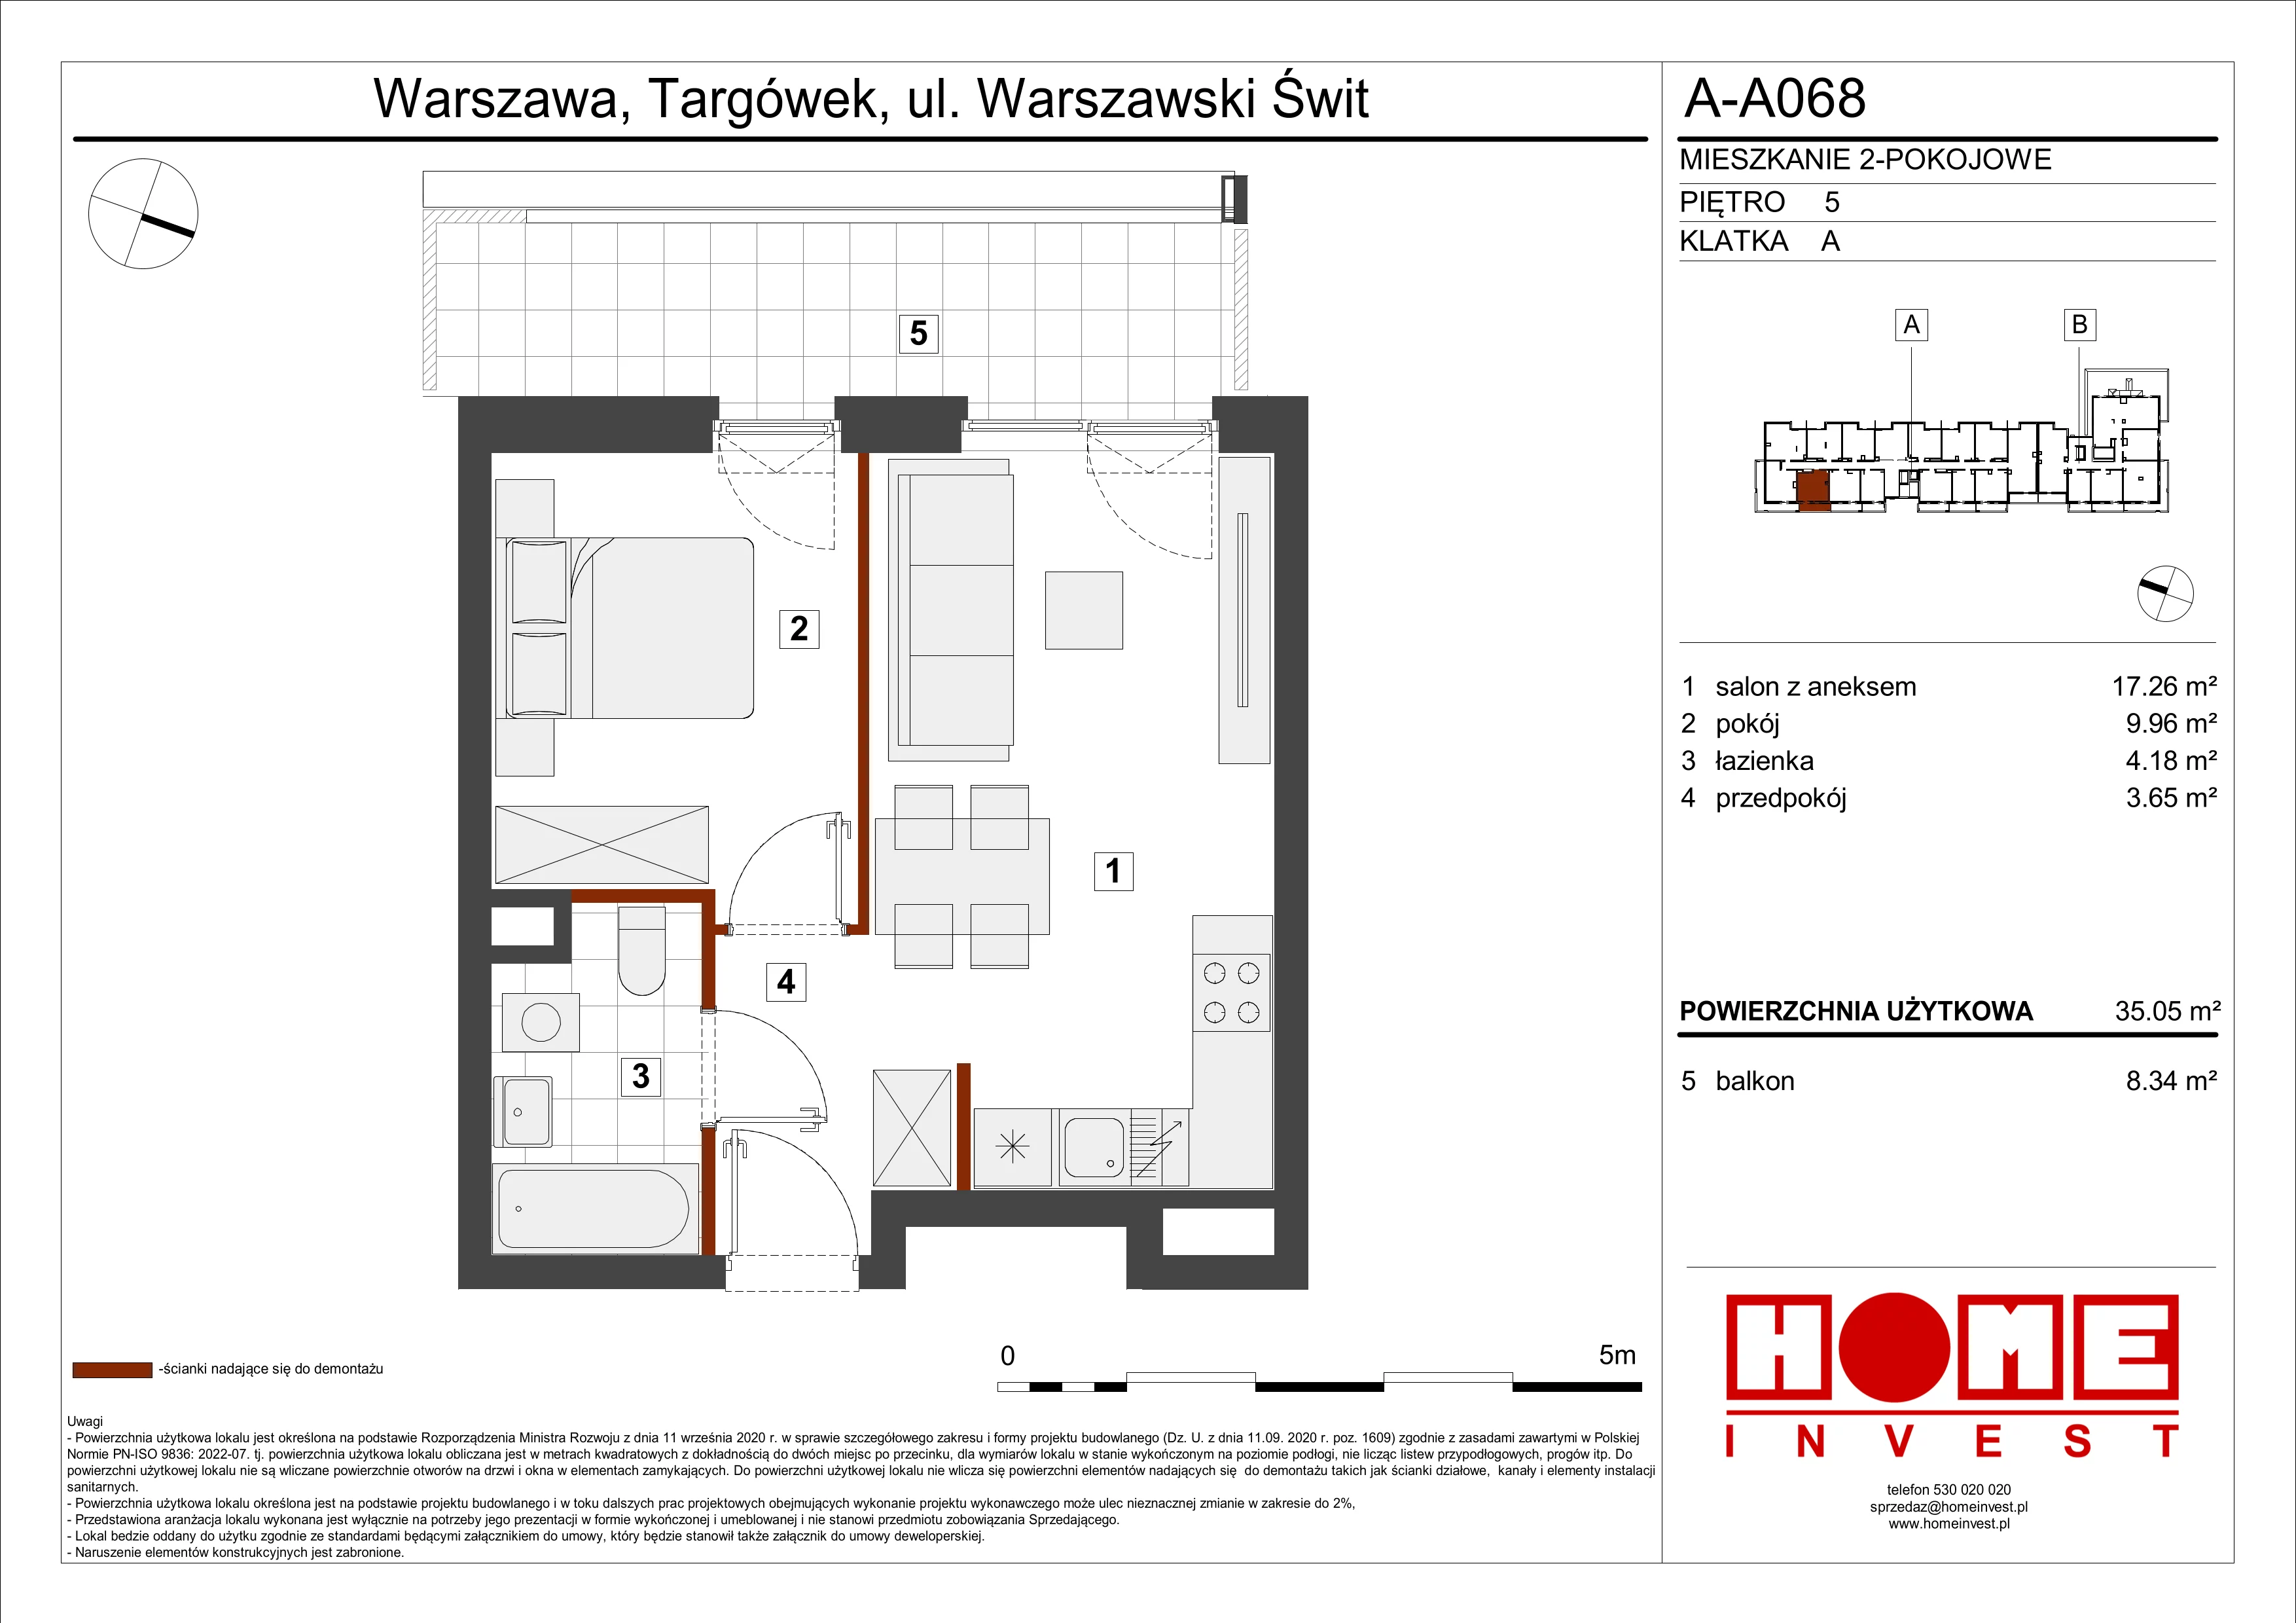 Mieszkanie 35,05 m², piętro 5, oferta nr A-A068, Warszawski Świt, Warszawa, Targówek, Bródno, ul. Warszawski Świt 5